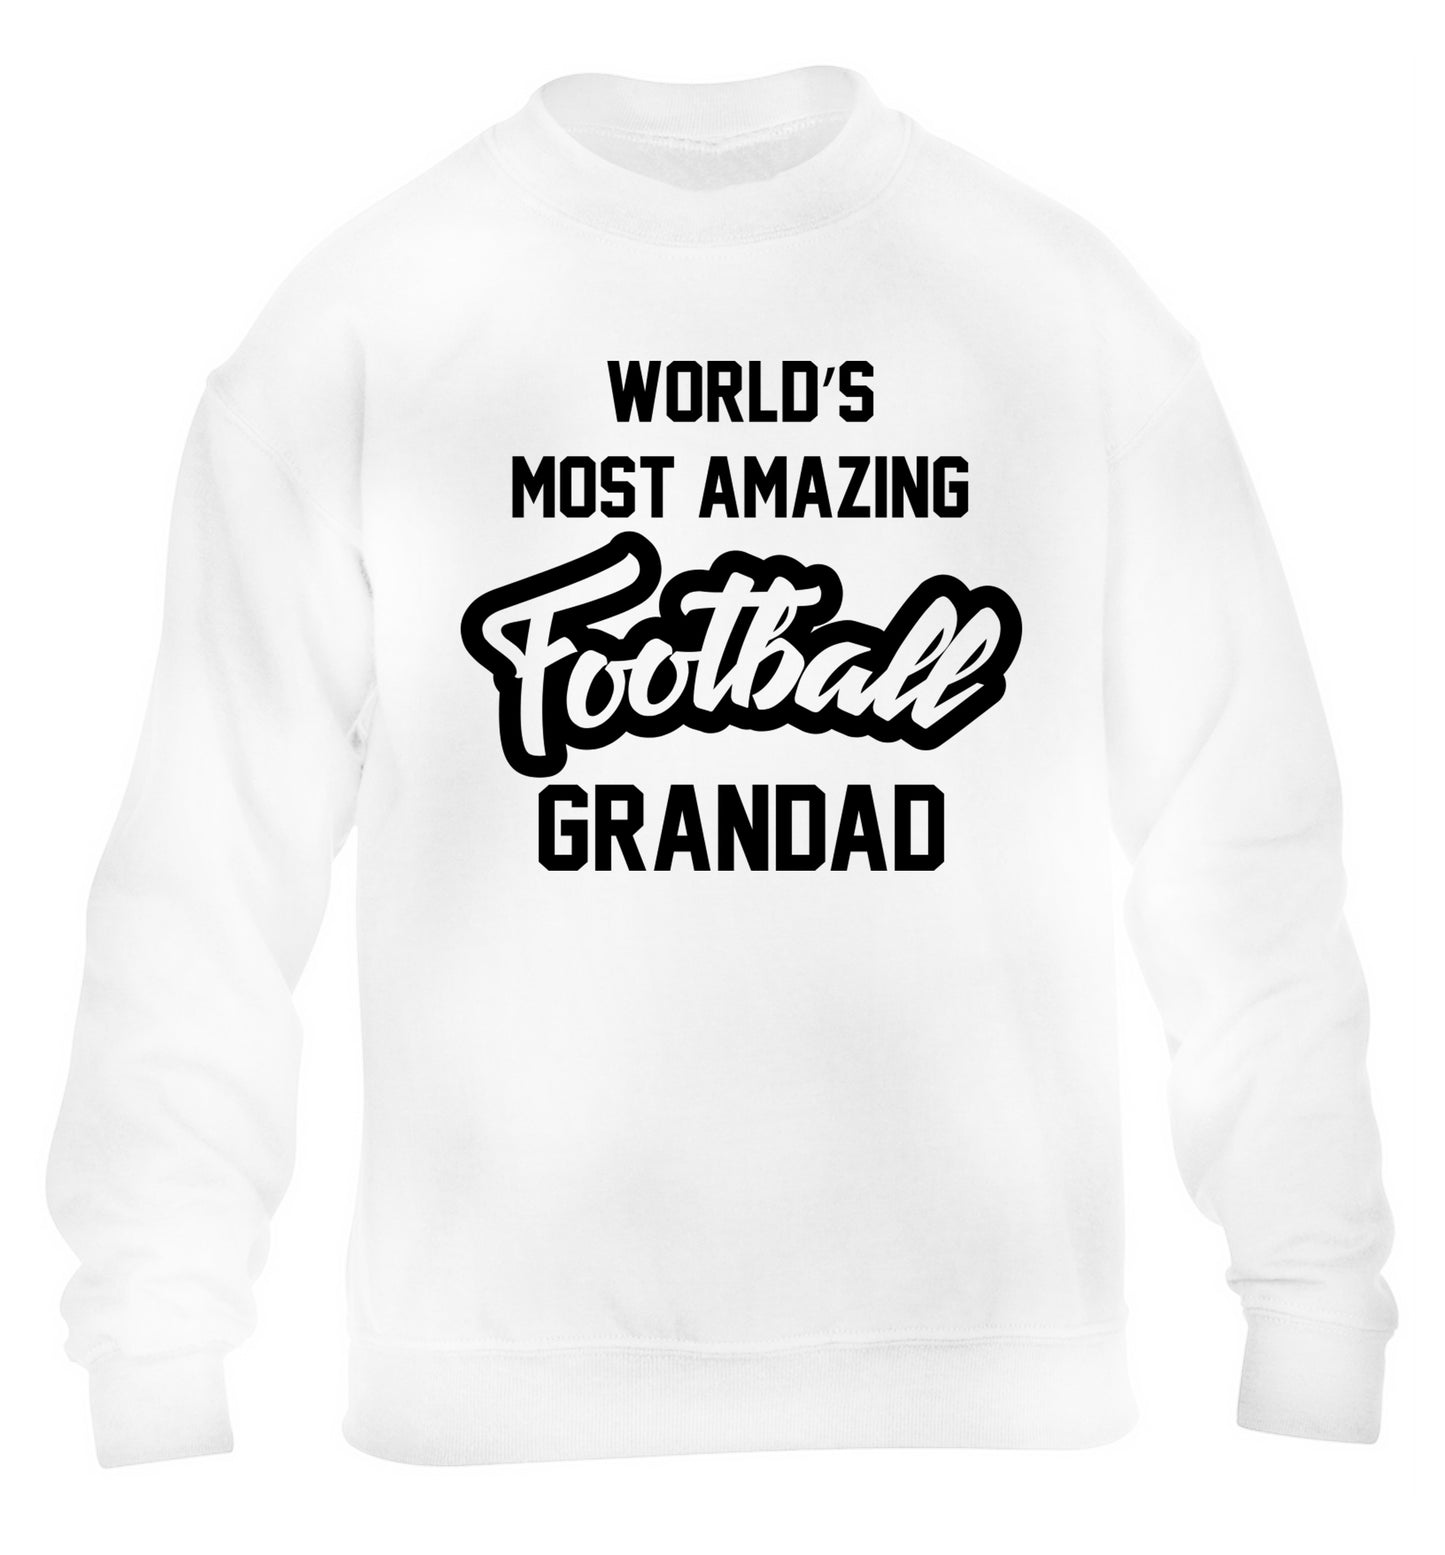 Worlds most amazing football grandad children's white sweater 12-14 Years